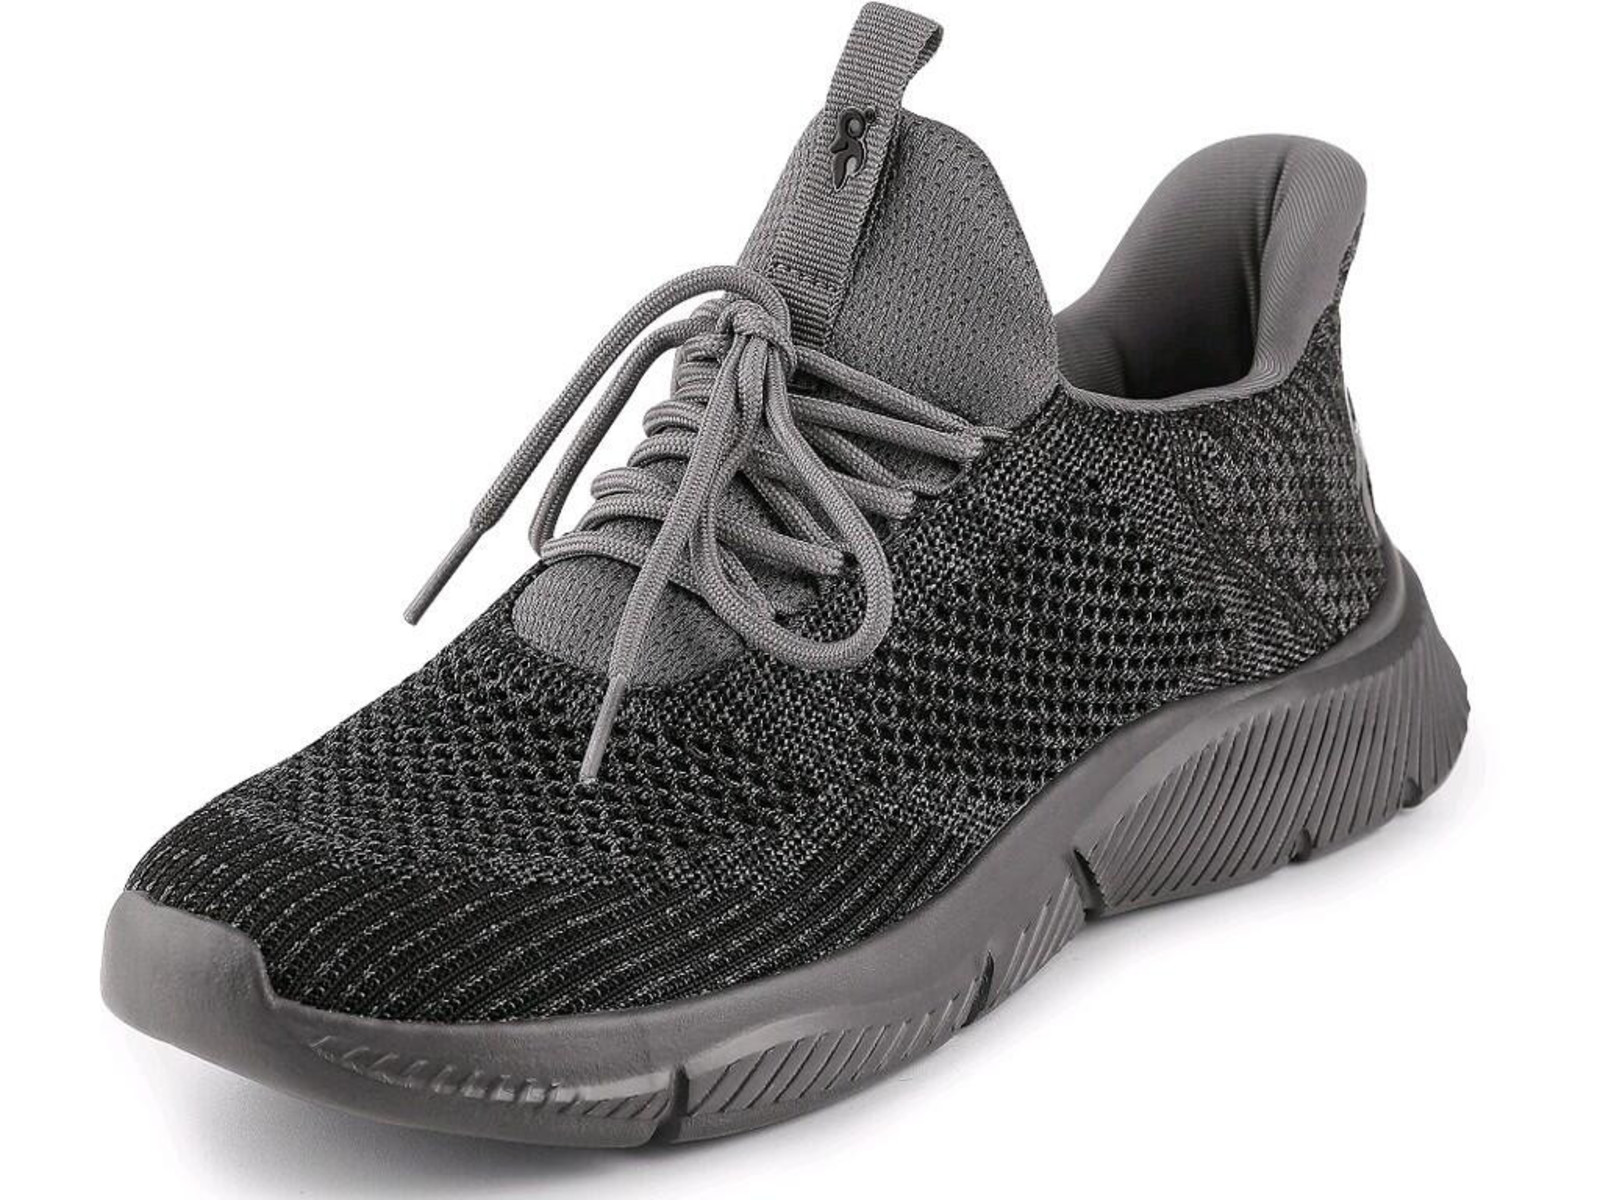 Voľnočasová obuv CXS Island Barbados - veľkosť: 43, farba: sivá/čierna